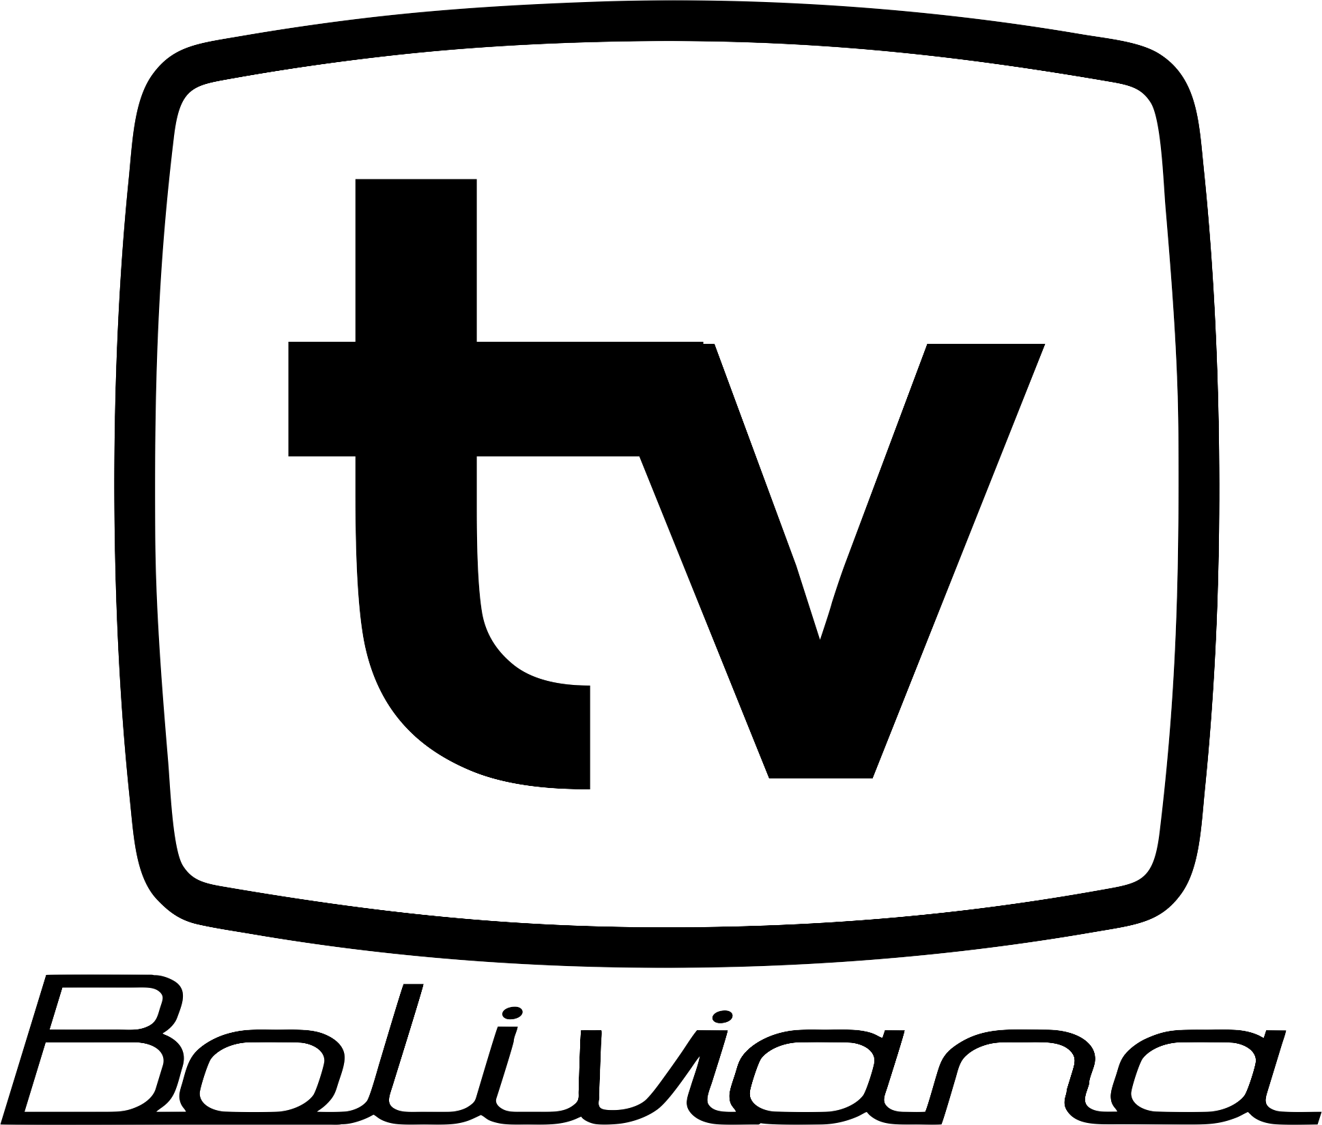 Bolivia Logo - Bolivia TV